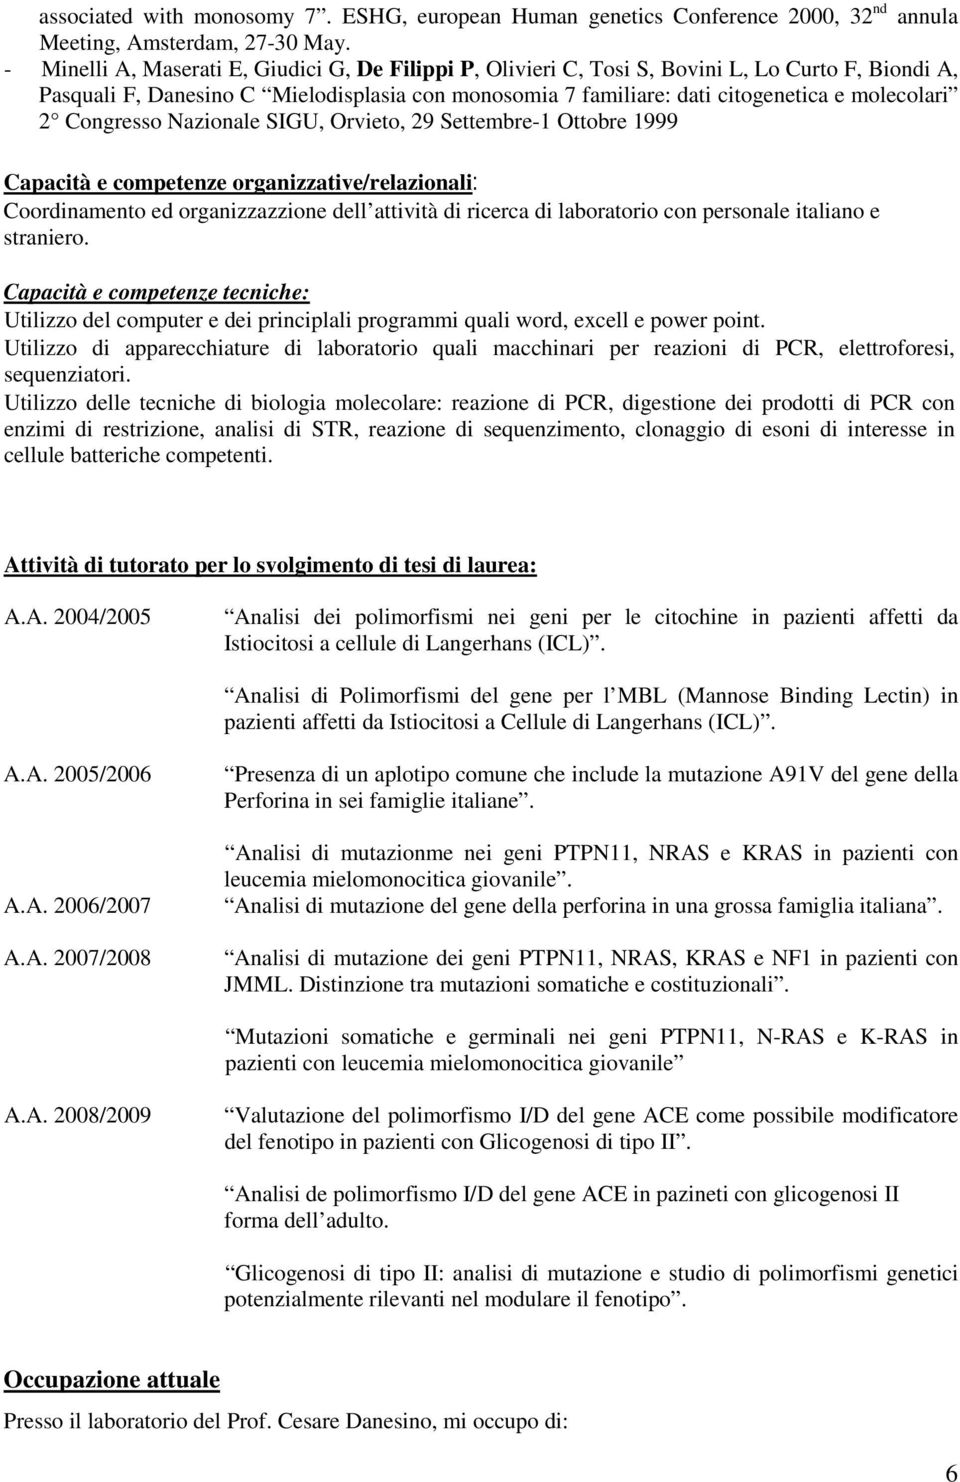 Congresso Nazionale SIGU, Orvieto, 29 Settembre-1 Ottobre 1999 Capacità e competenze organizzative/relazionali: Coordinamento ed organizzazzione dell attività di ricerca di laboratorio con personale